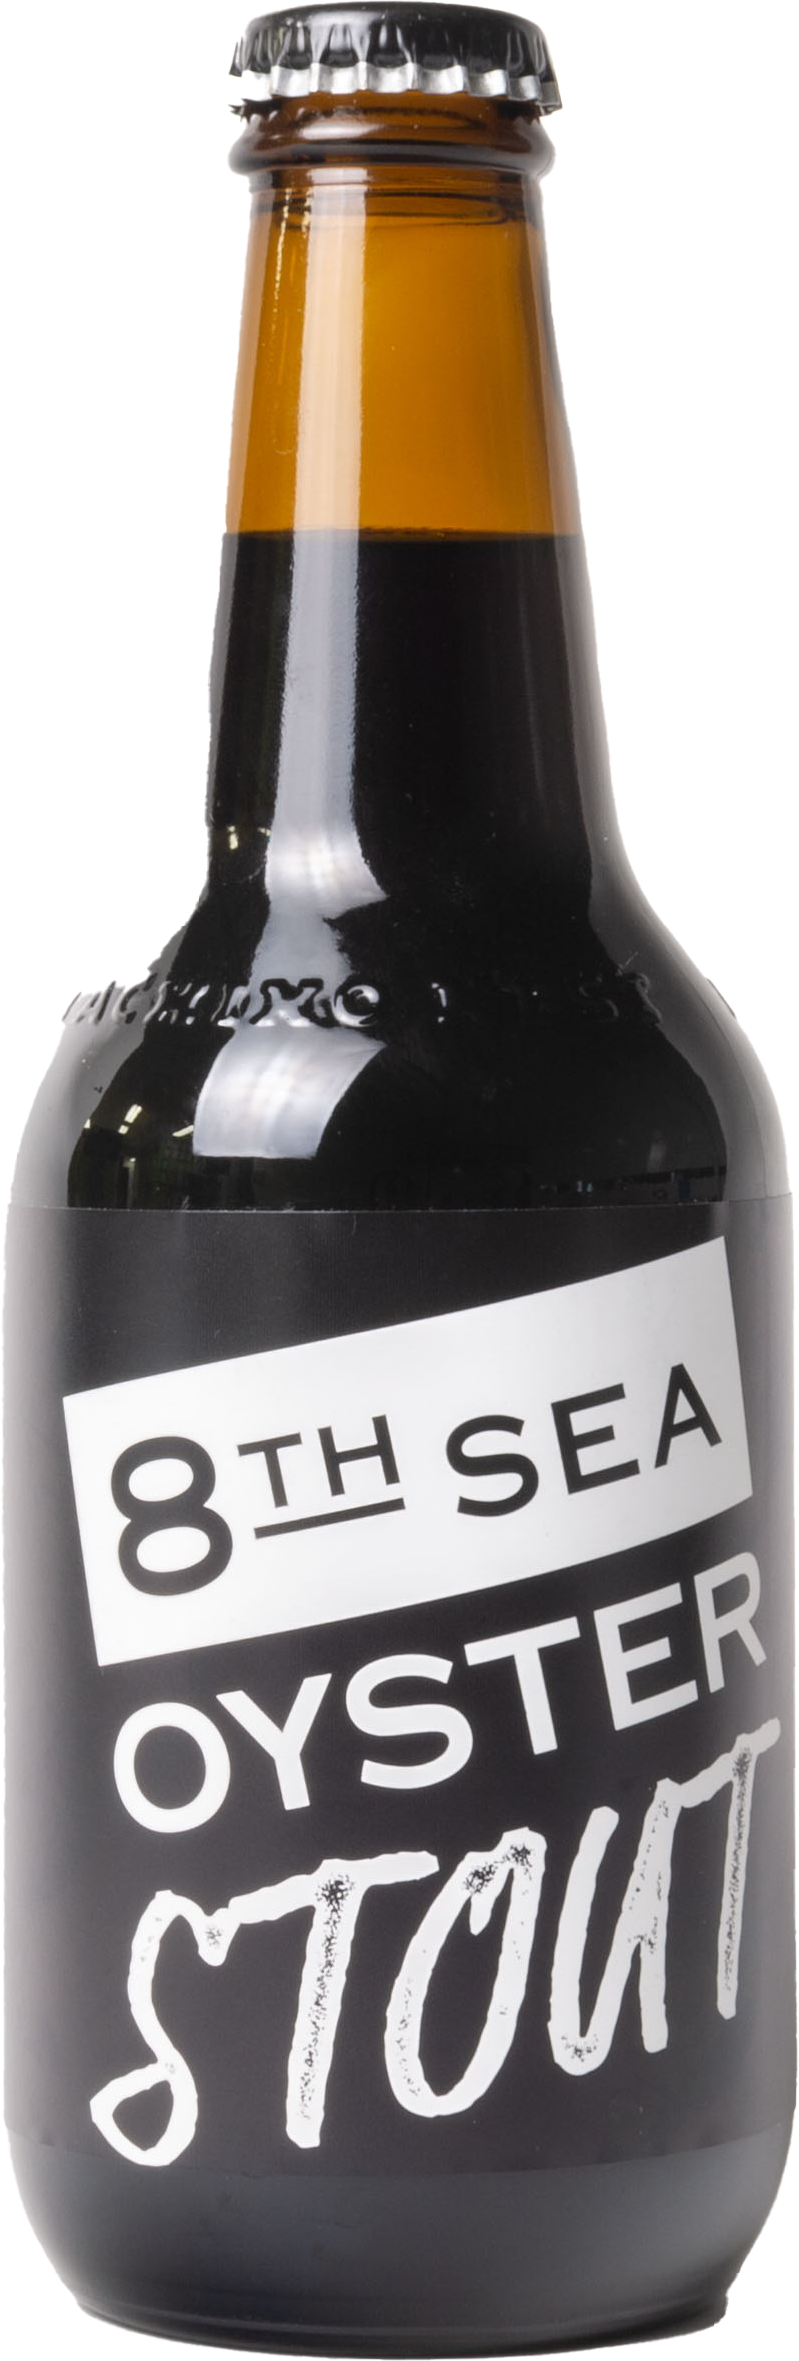 8TH SEA OYSTER スタウト ビール